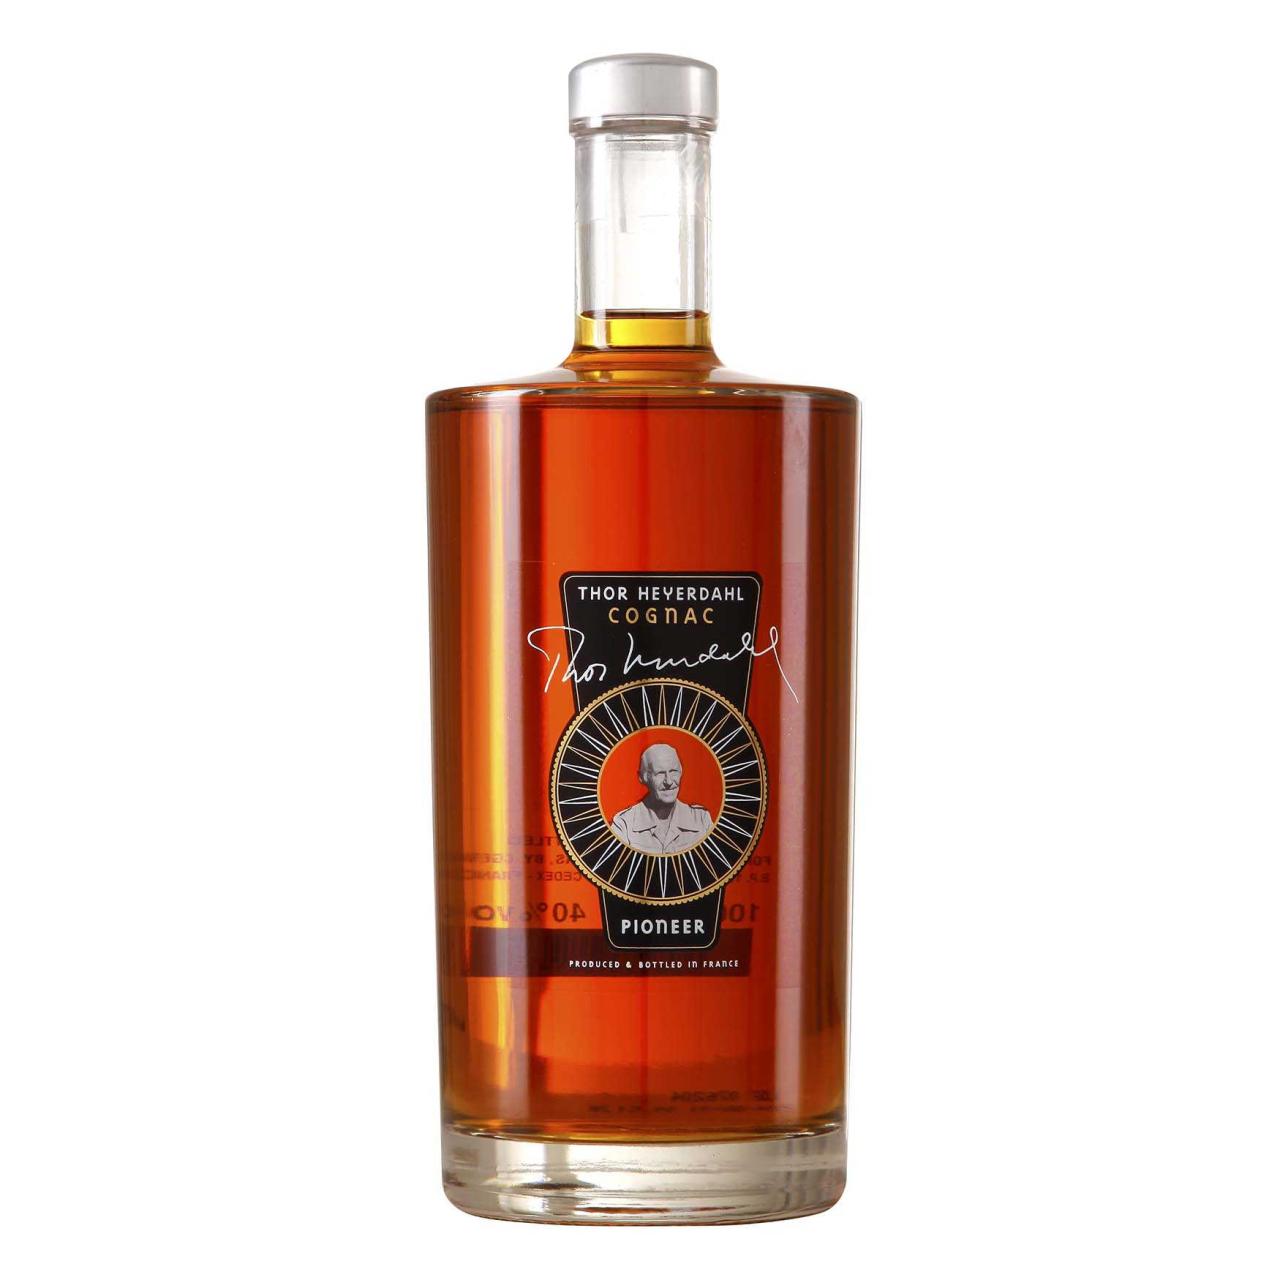 THOR HEYERDAHL Cognac Pioneer 40% 1,0l